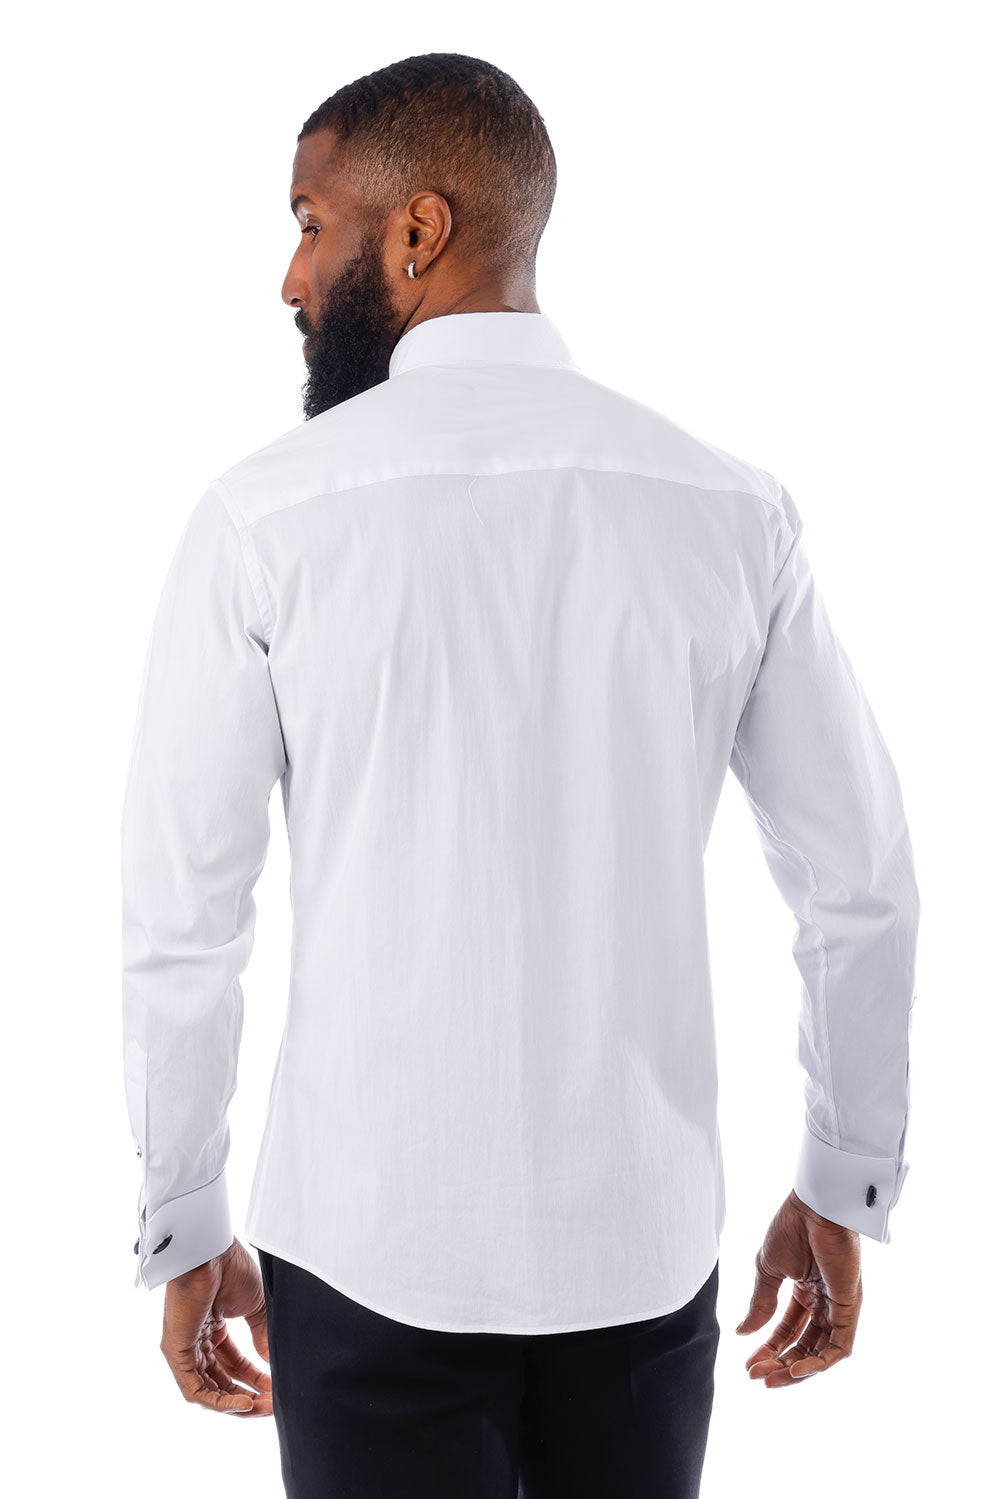 BARABAS Men's Tuxedo Wing Collar French Cuffs Long Sleeve Shirt 4txs02 White